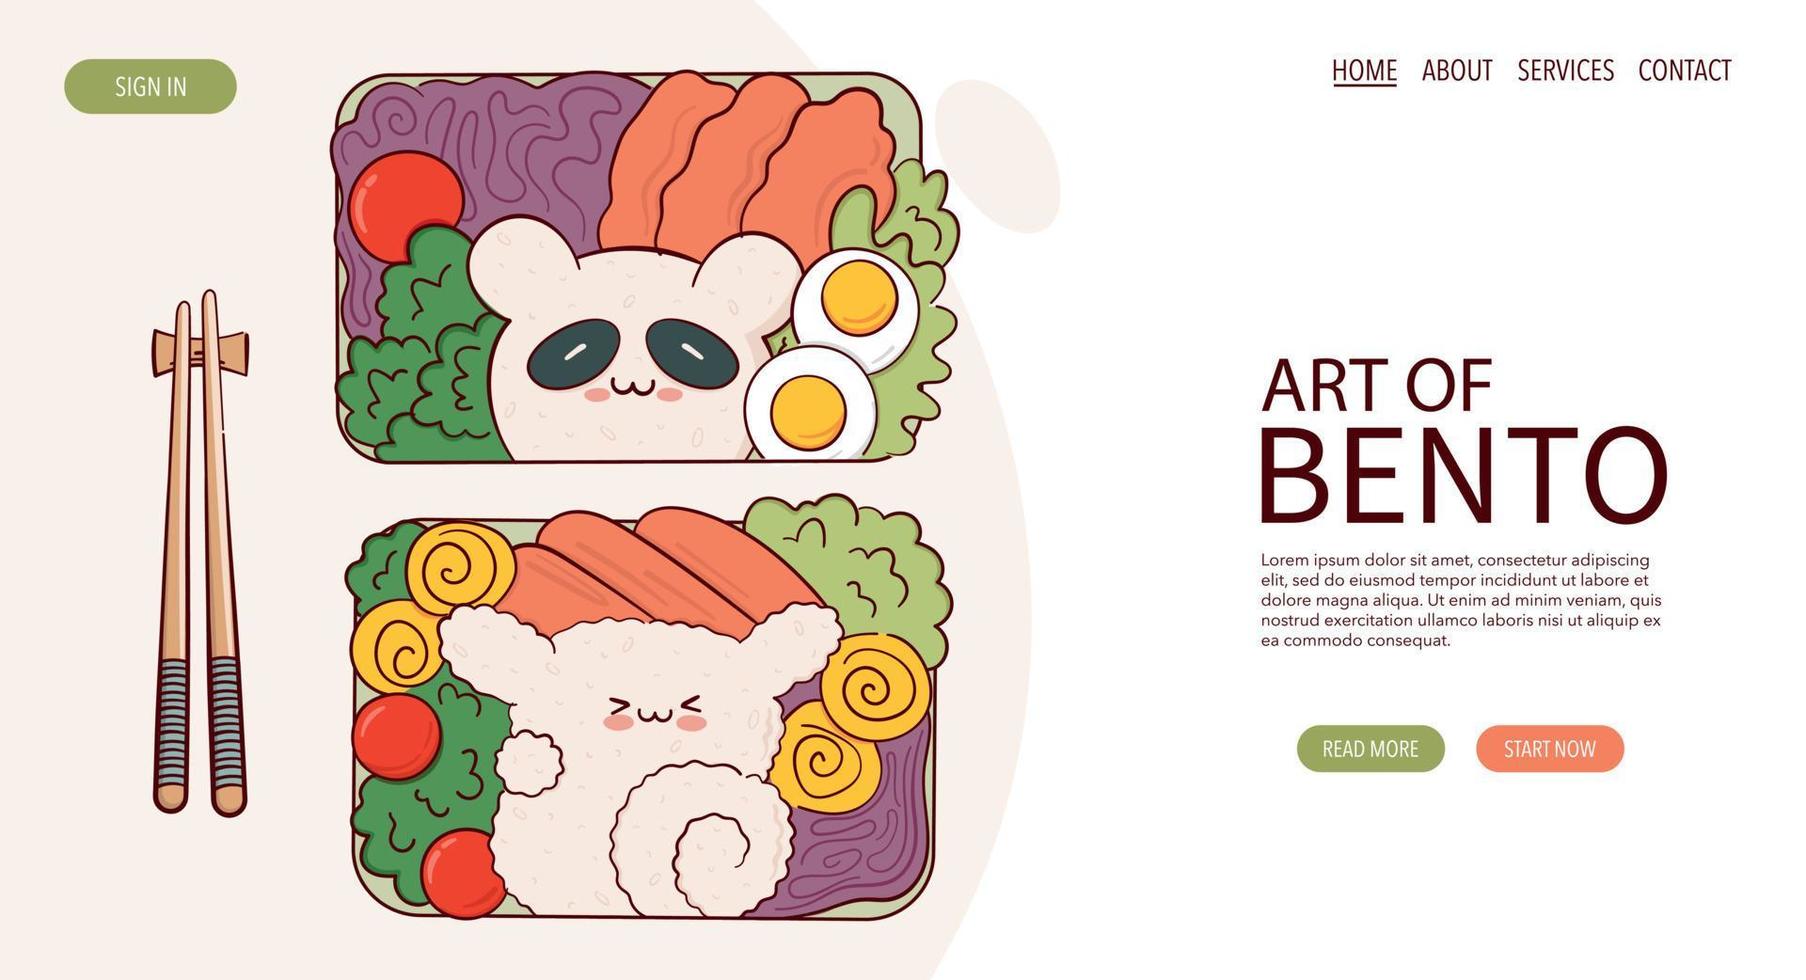 webseite zeichnen lustige kawaii bento box hausmannskost zum mitnehmen mahlzeit zubereitung vektorillustration. japanisches asiatisches traditionelles essen, kochen, menükonzept. Banner, Website, Werbung im Doodle-Cartoon-Stil. vektor